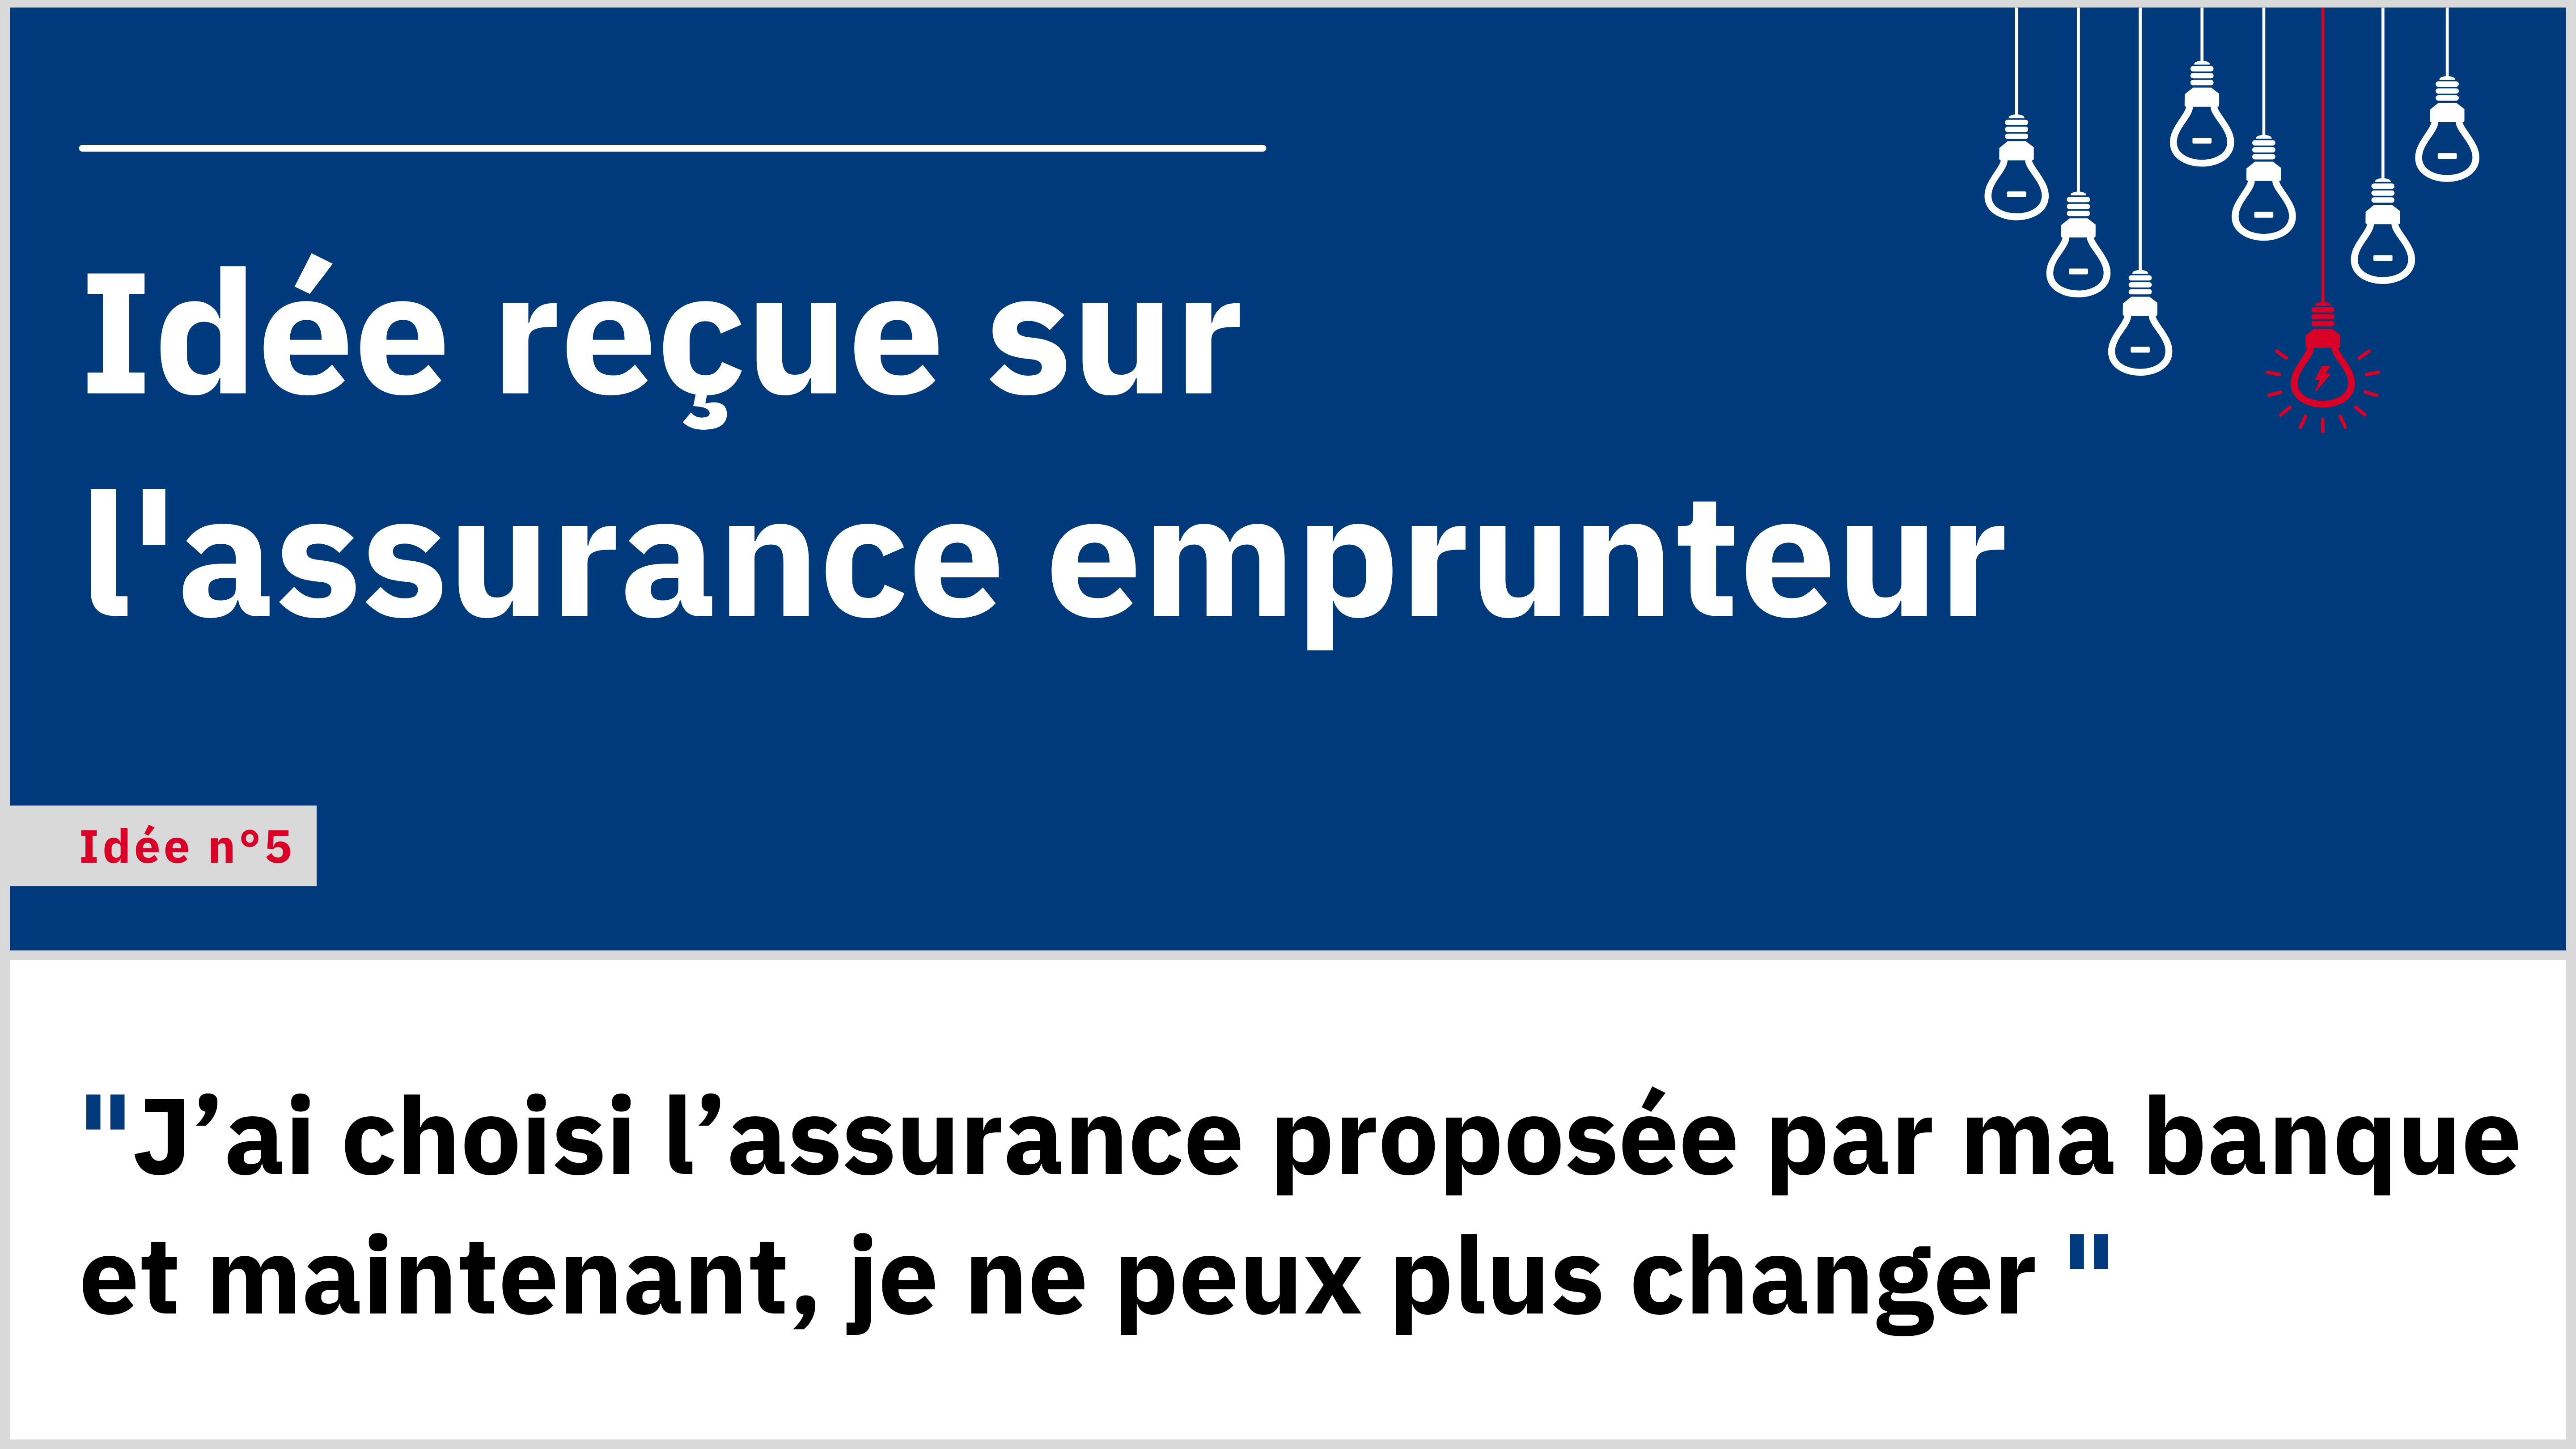 « J’ai choisi l’assurance proposée par ma banque et maintenant, je ne peux plus changer ».